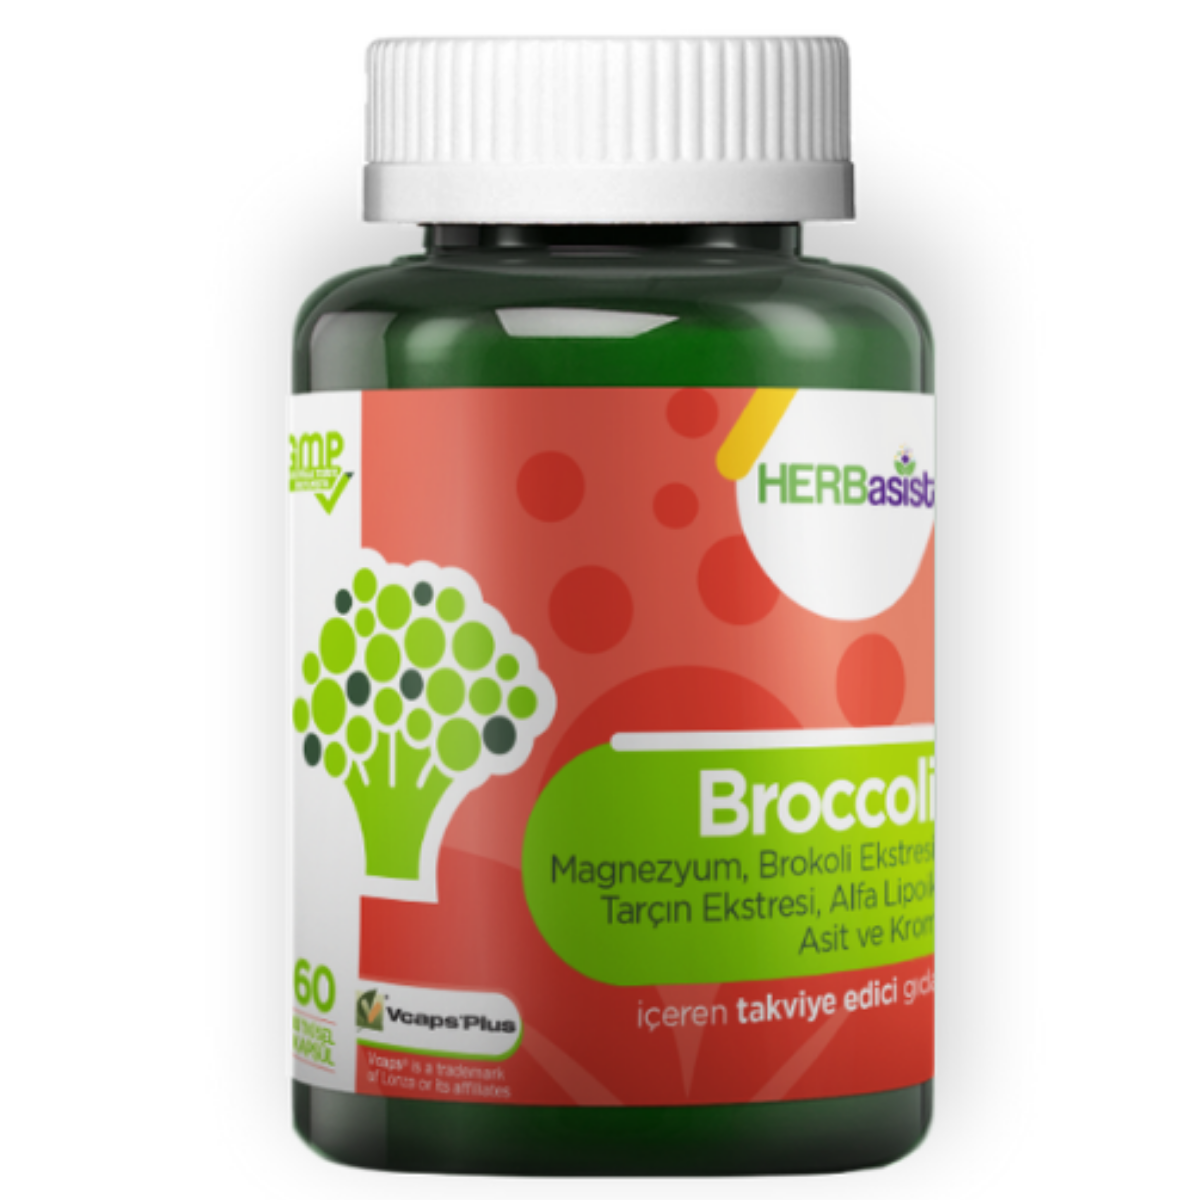 HERBasist Broccoli 60 Kapsül